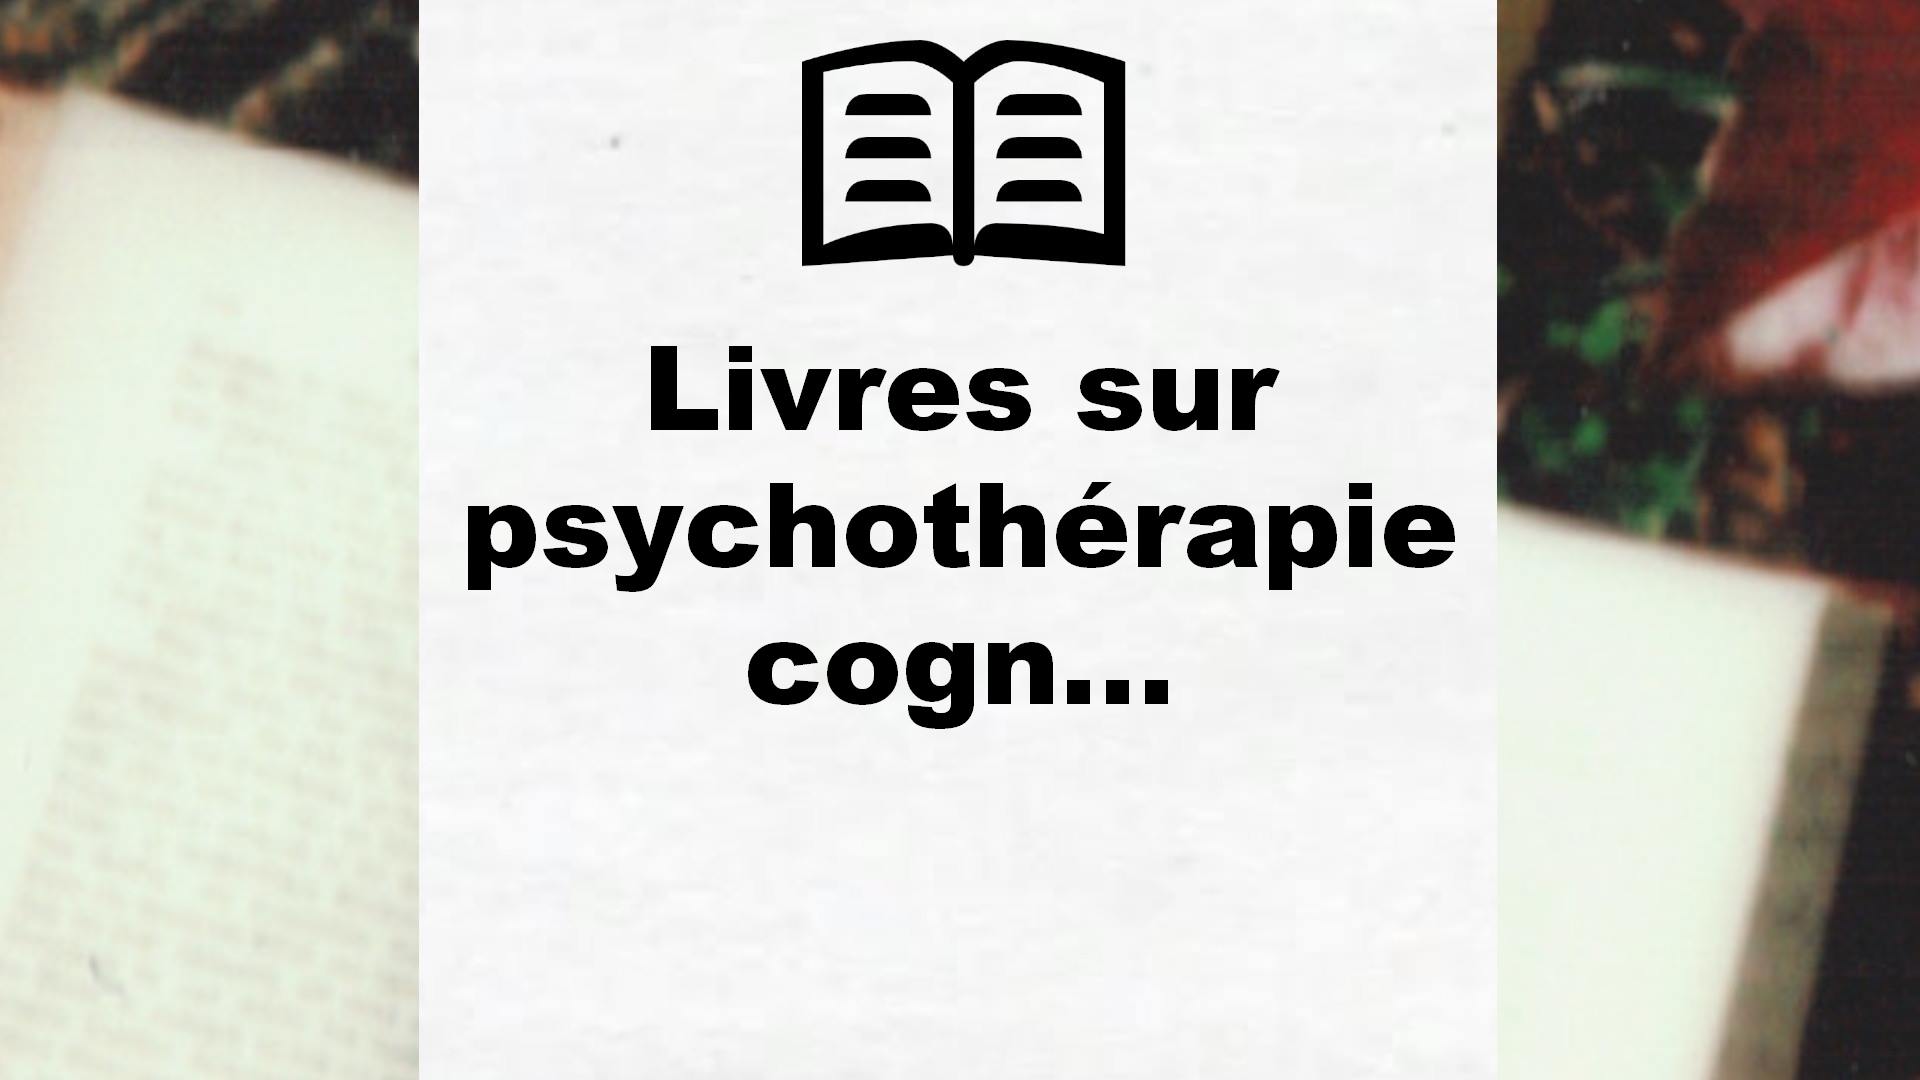 Livres sur psychothérapie cognitive